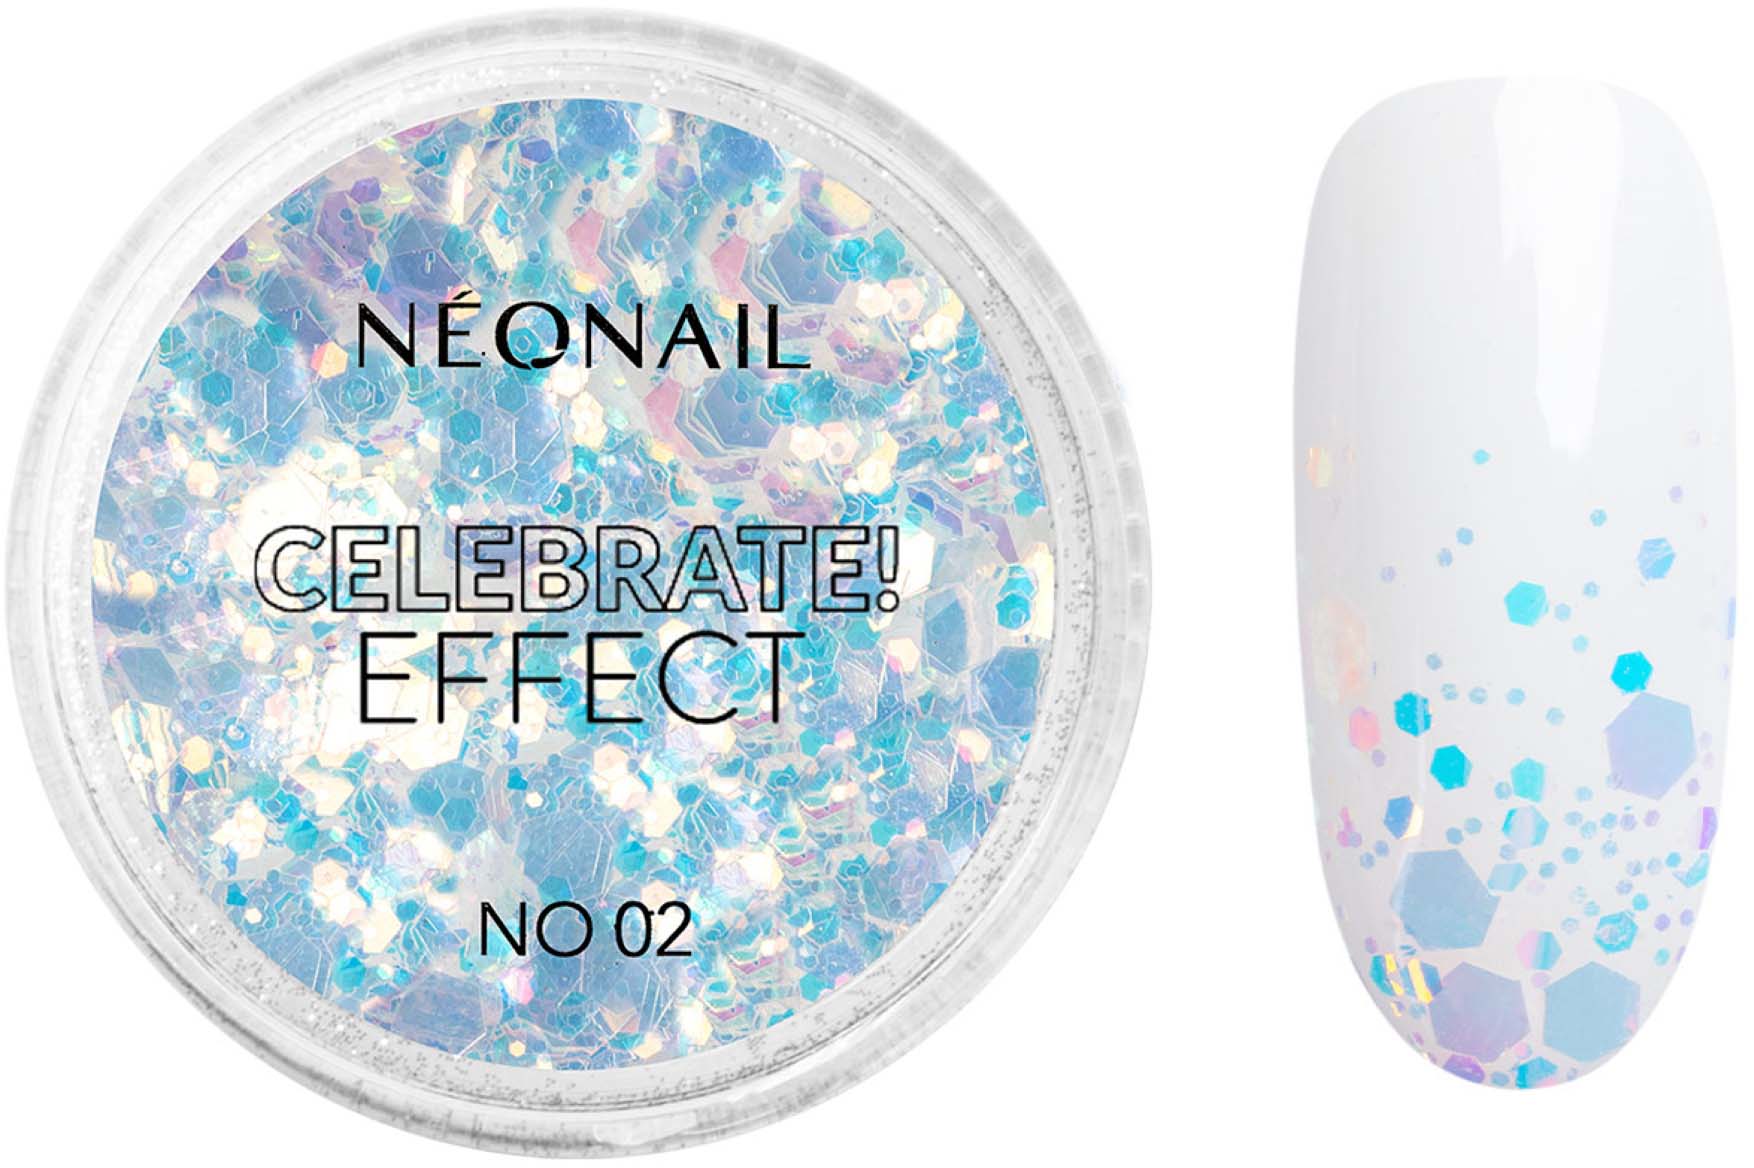 NEONAIL Celebrate! Effect No. 02